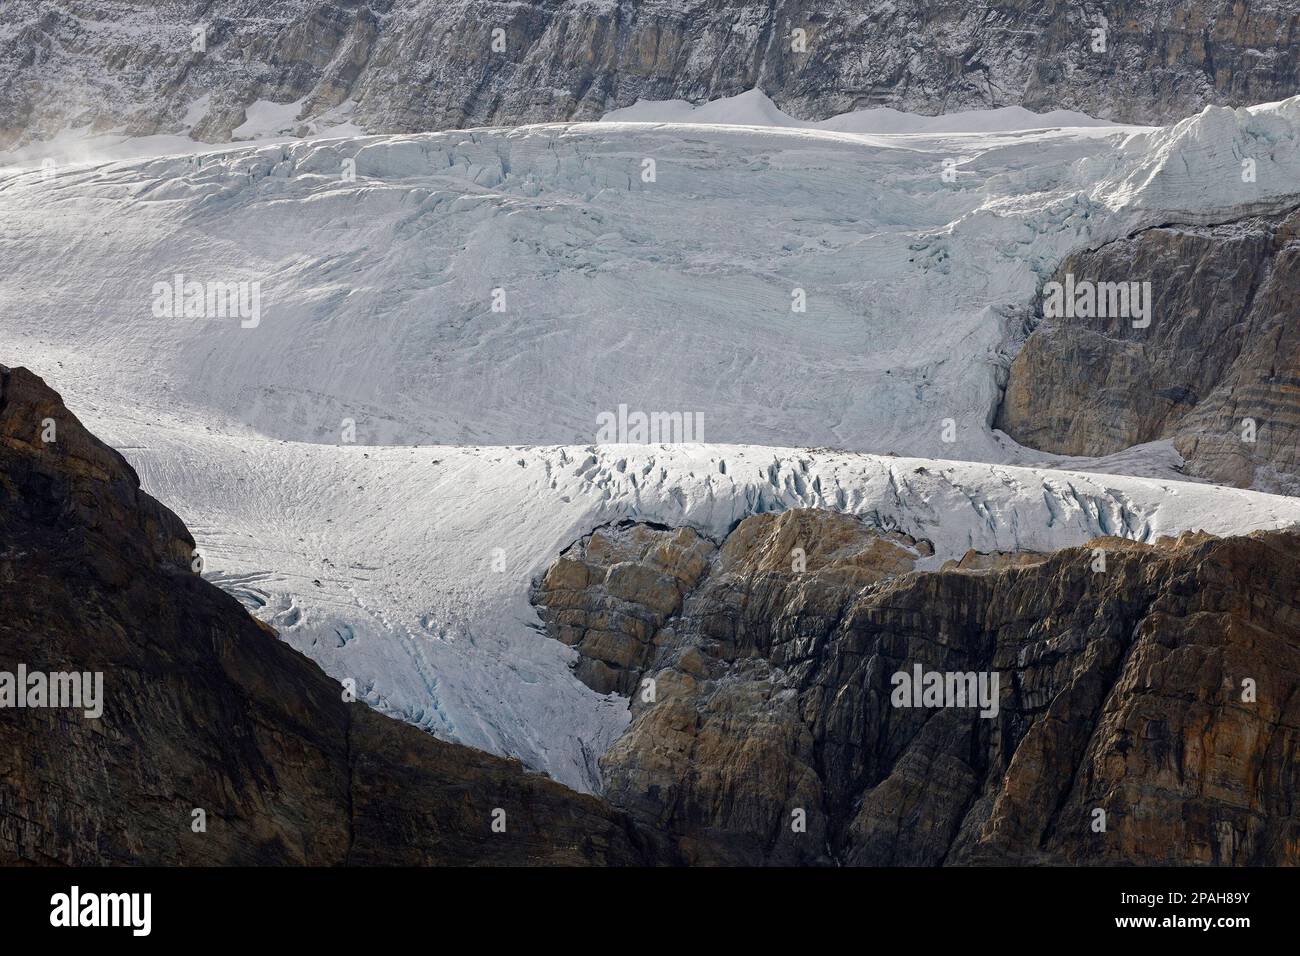 Glacier Crowfoot, scène depuis un point de vue sur la promenade des champs de glace dans le parc national Banff, Canada Banque D'Images